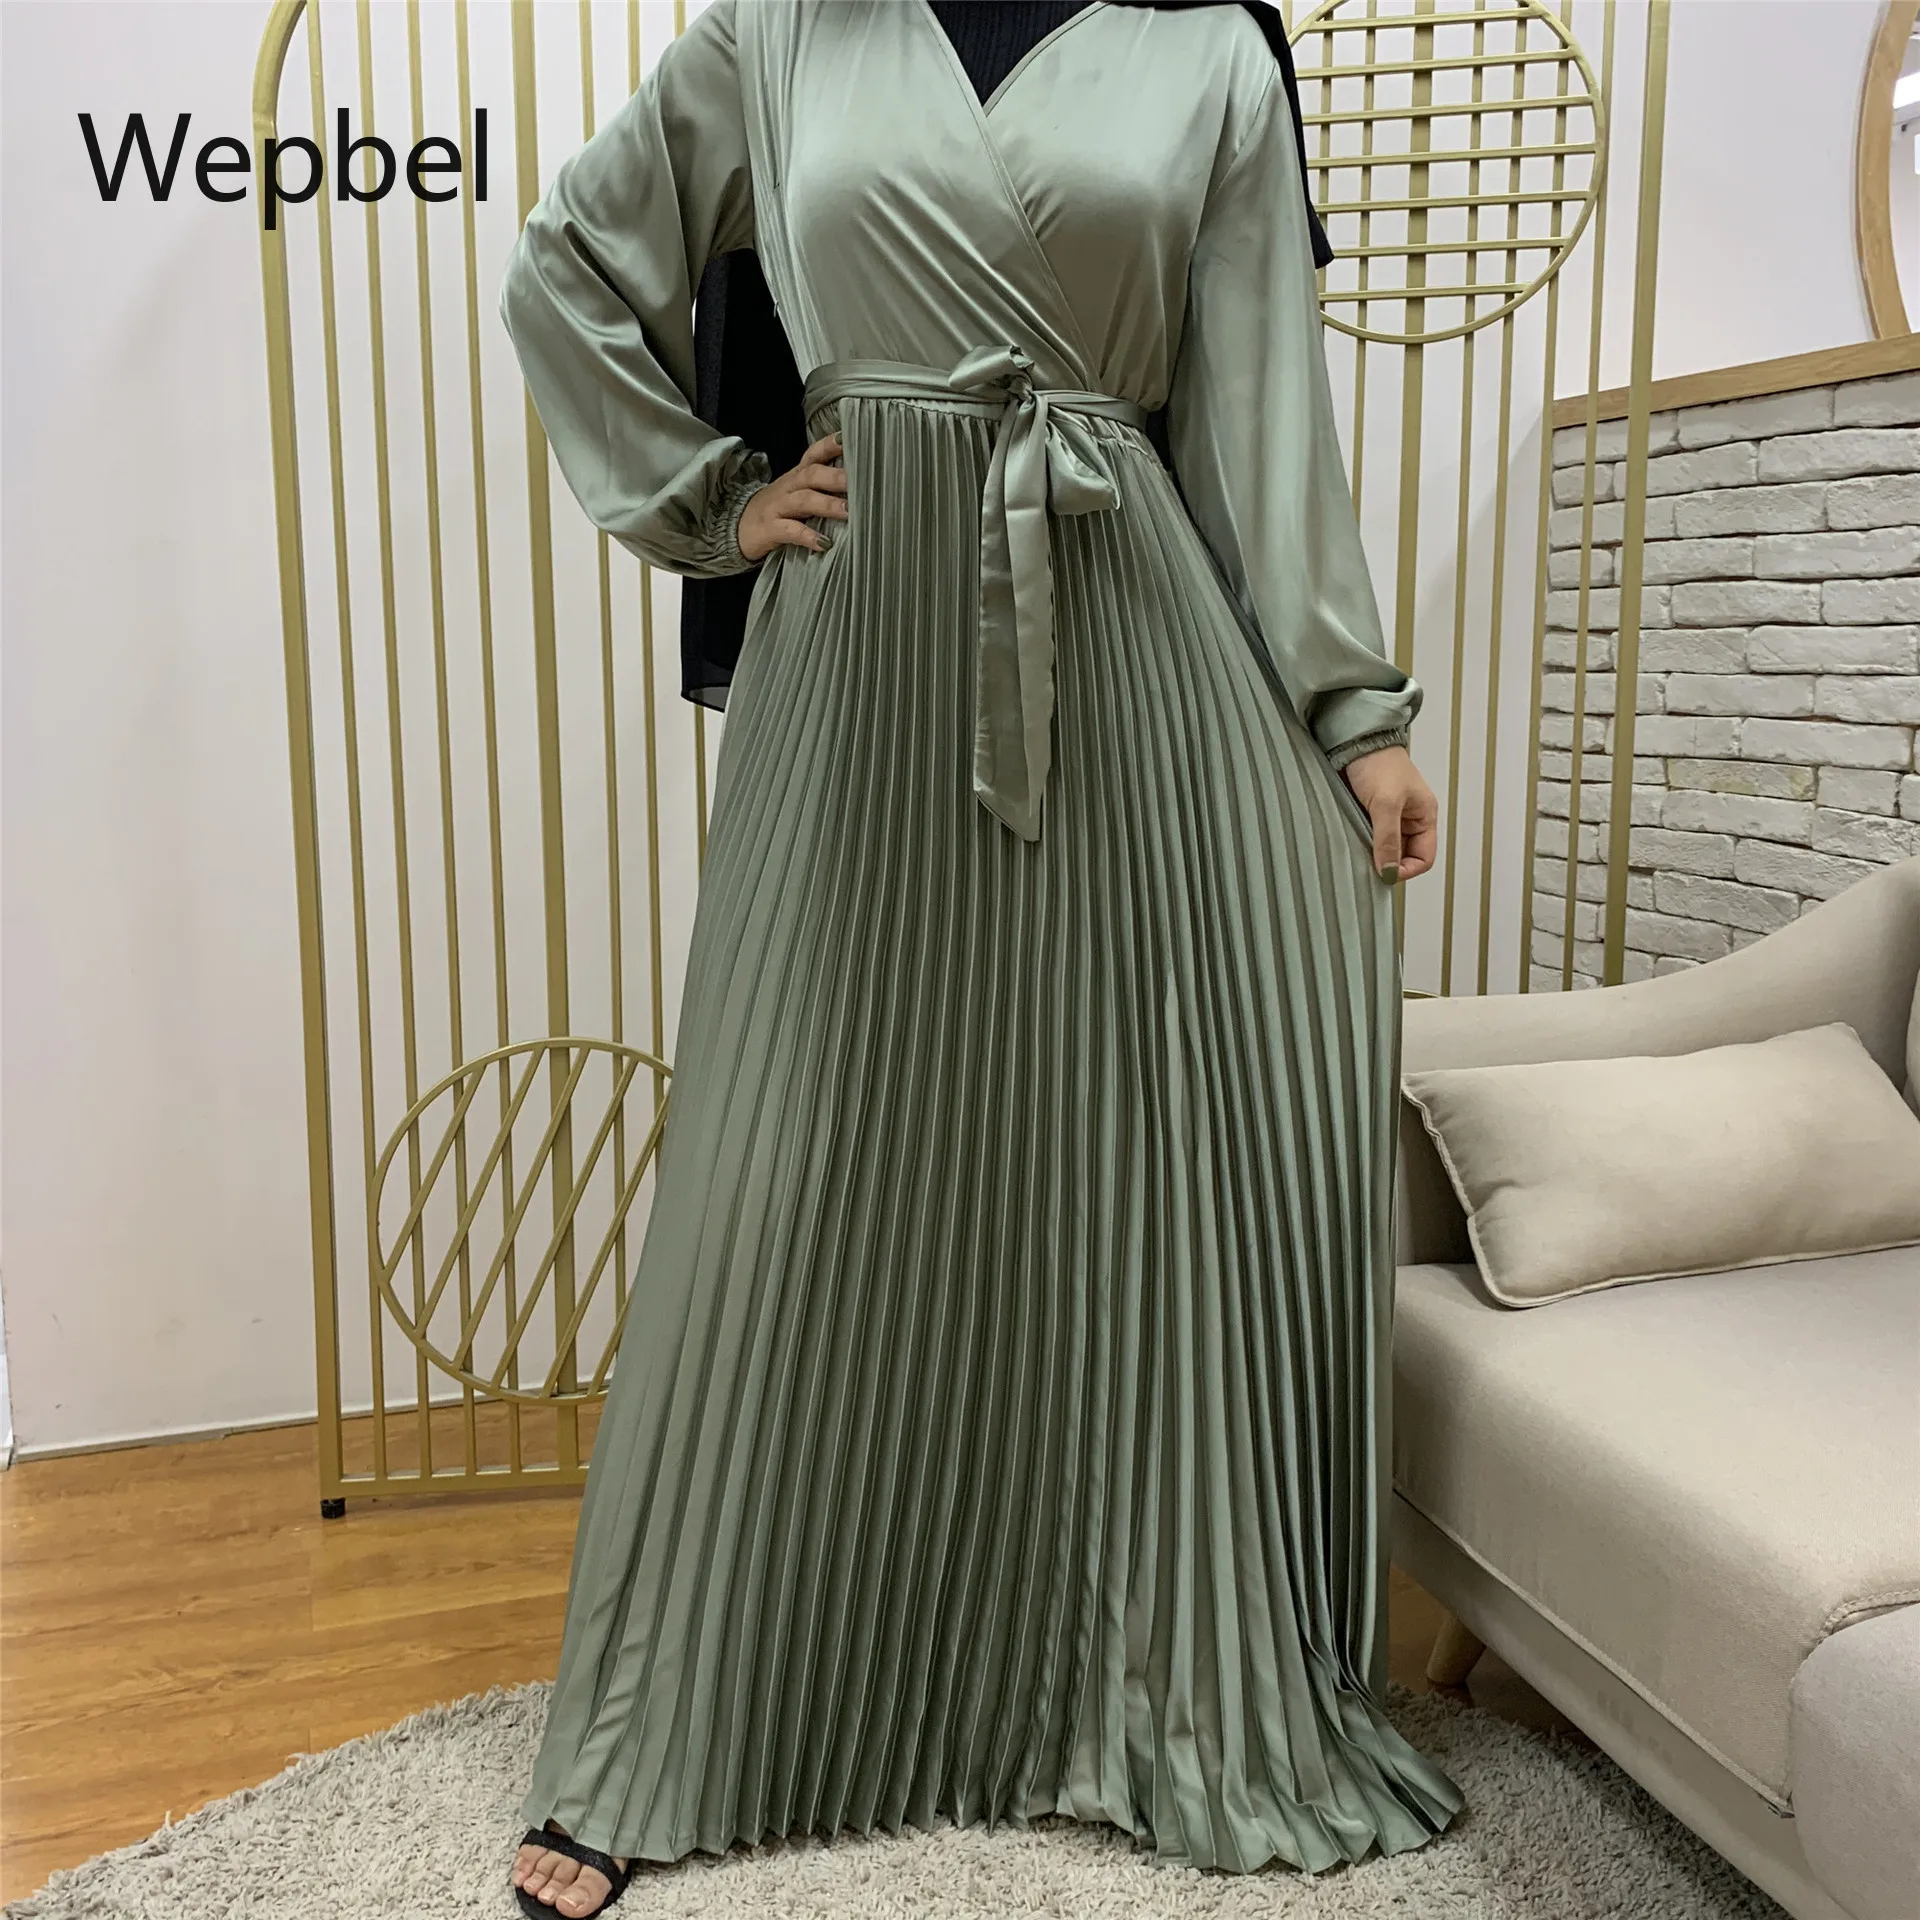 

Wepbel шить абайя Исламская одежда мода мусульманское платье, женское платье с v-образным воротом, со складками, пышные платья-Макси платье с бо...